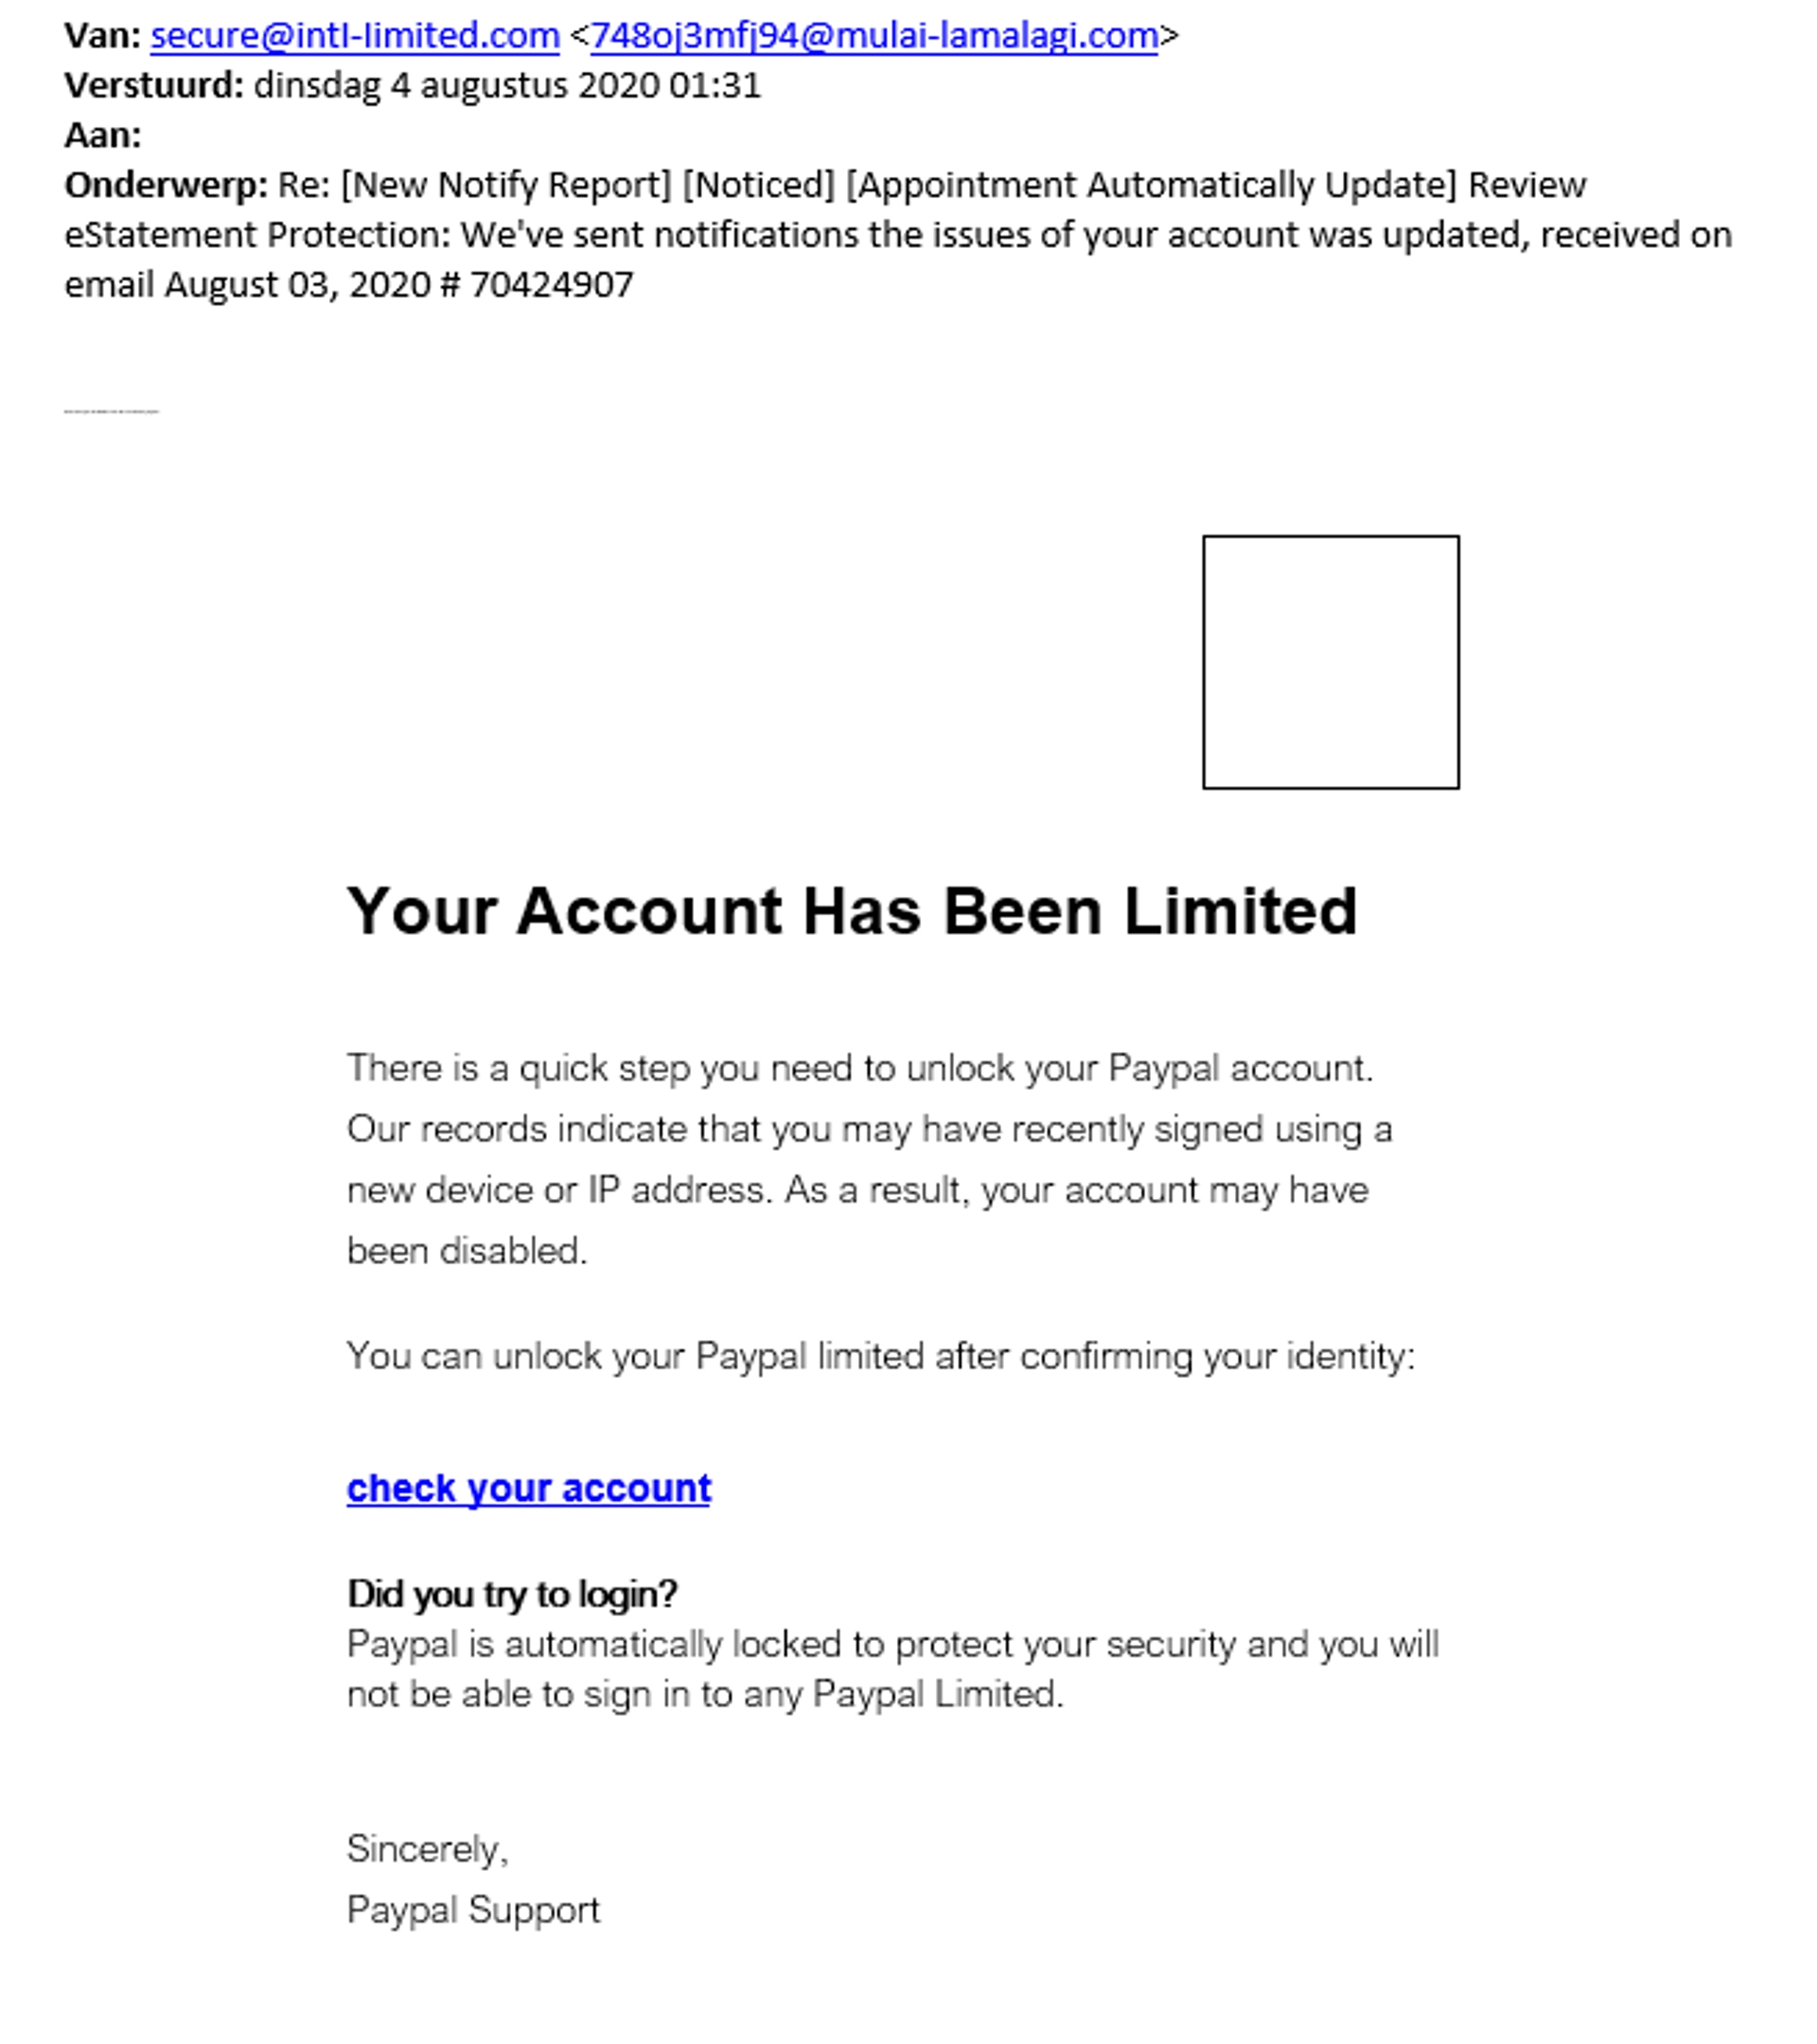 phishingmail paypal 4 augustus 2020